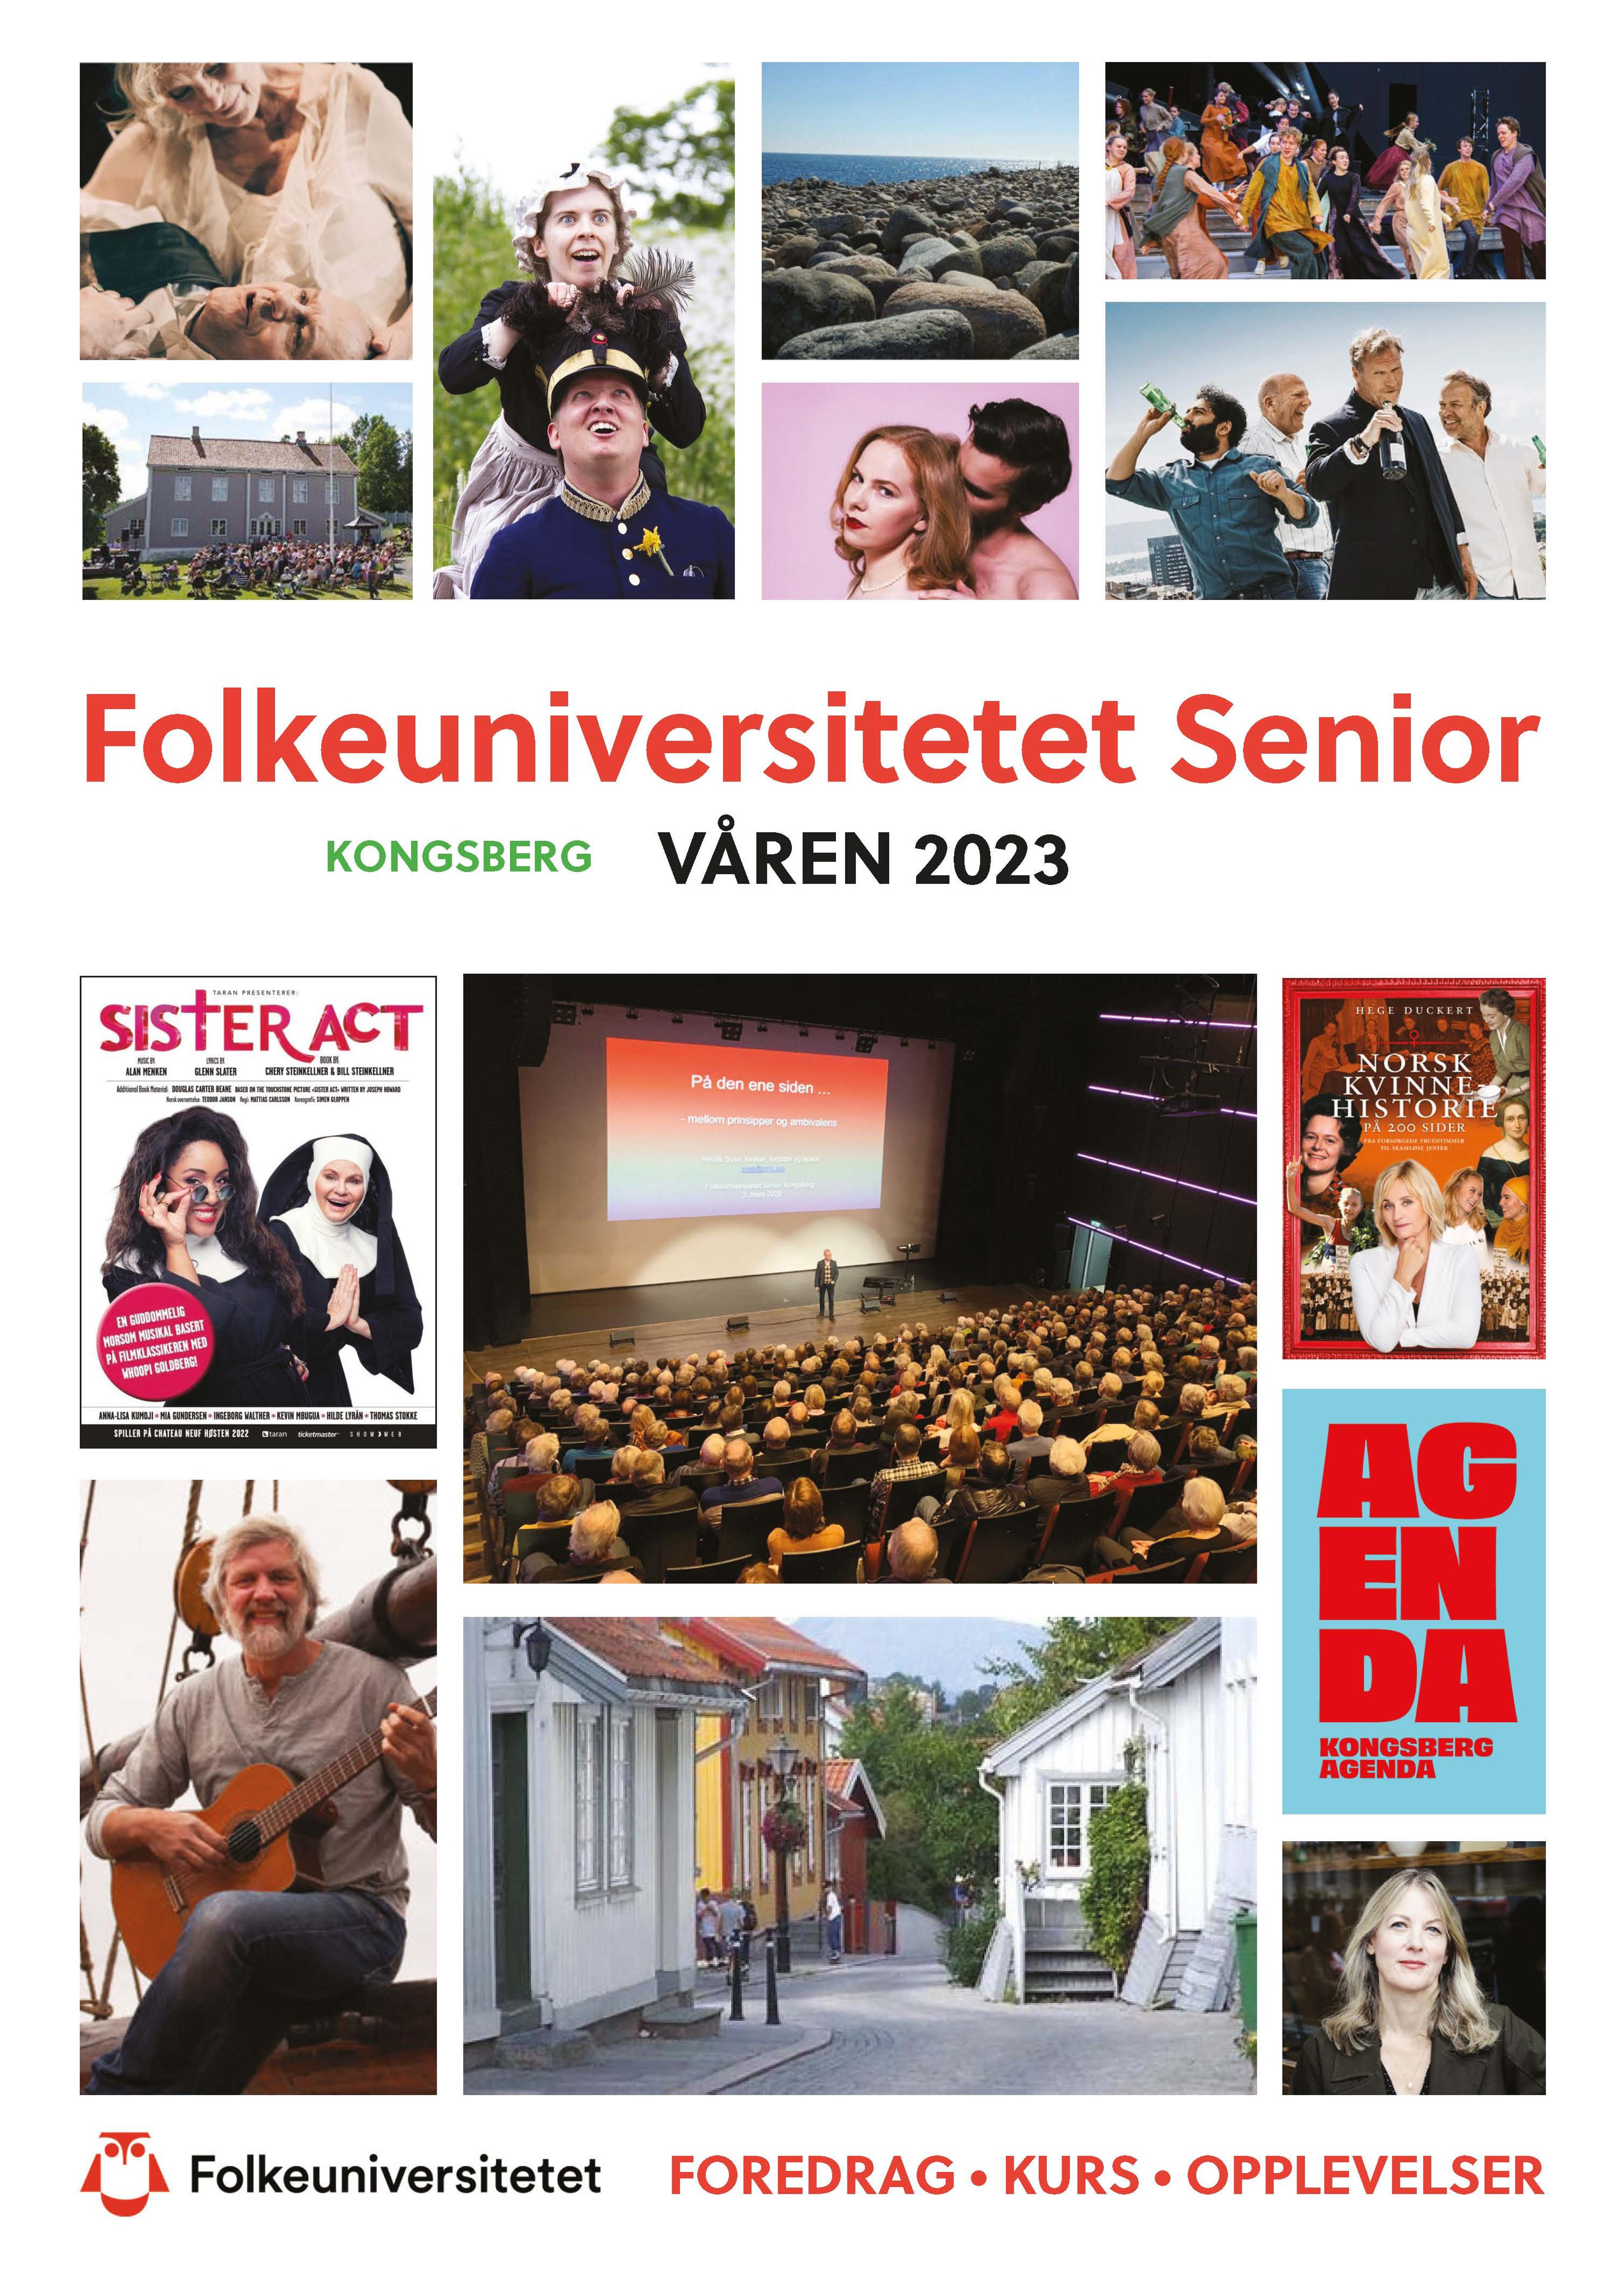 Folkeuniversitetet Senior Kongsberg våren 2023